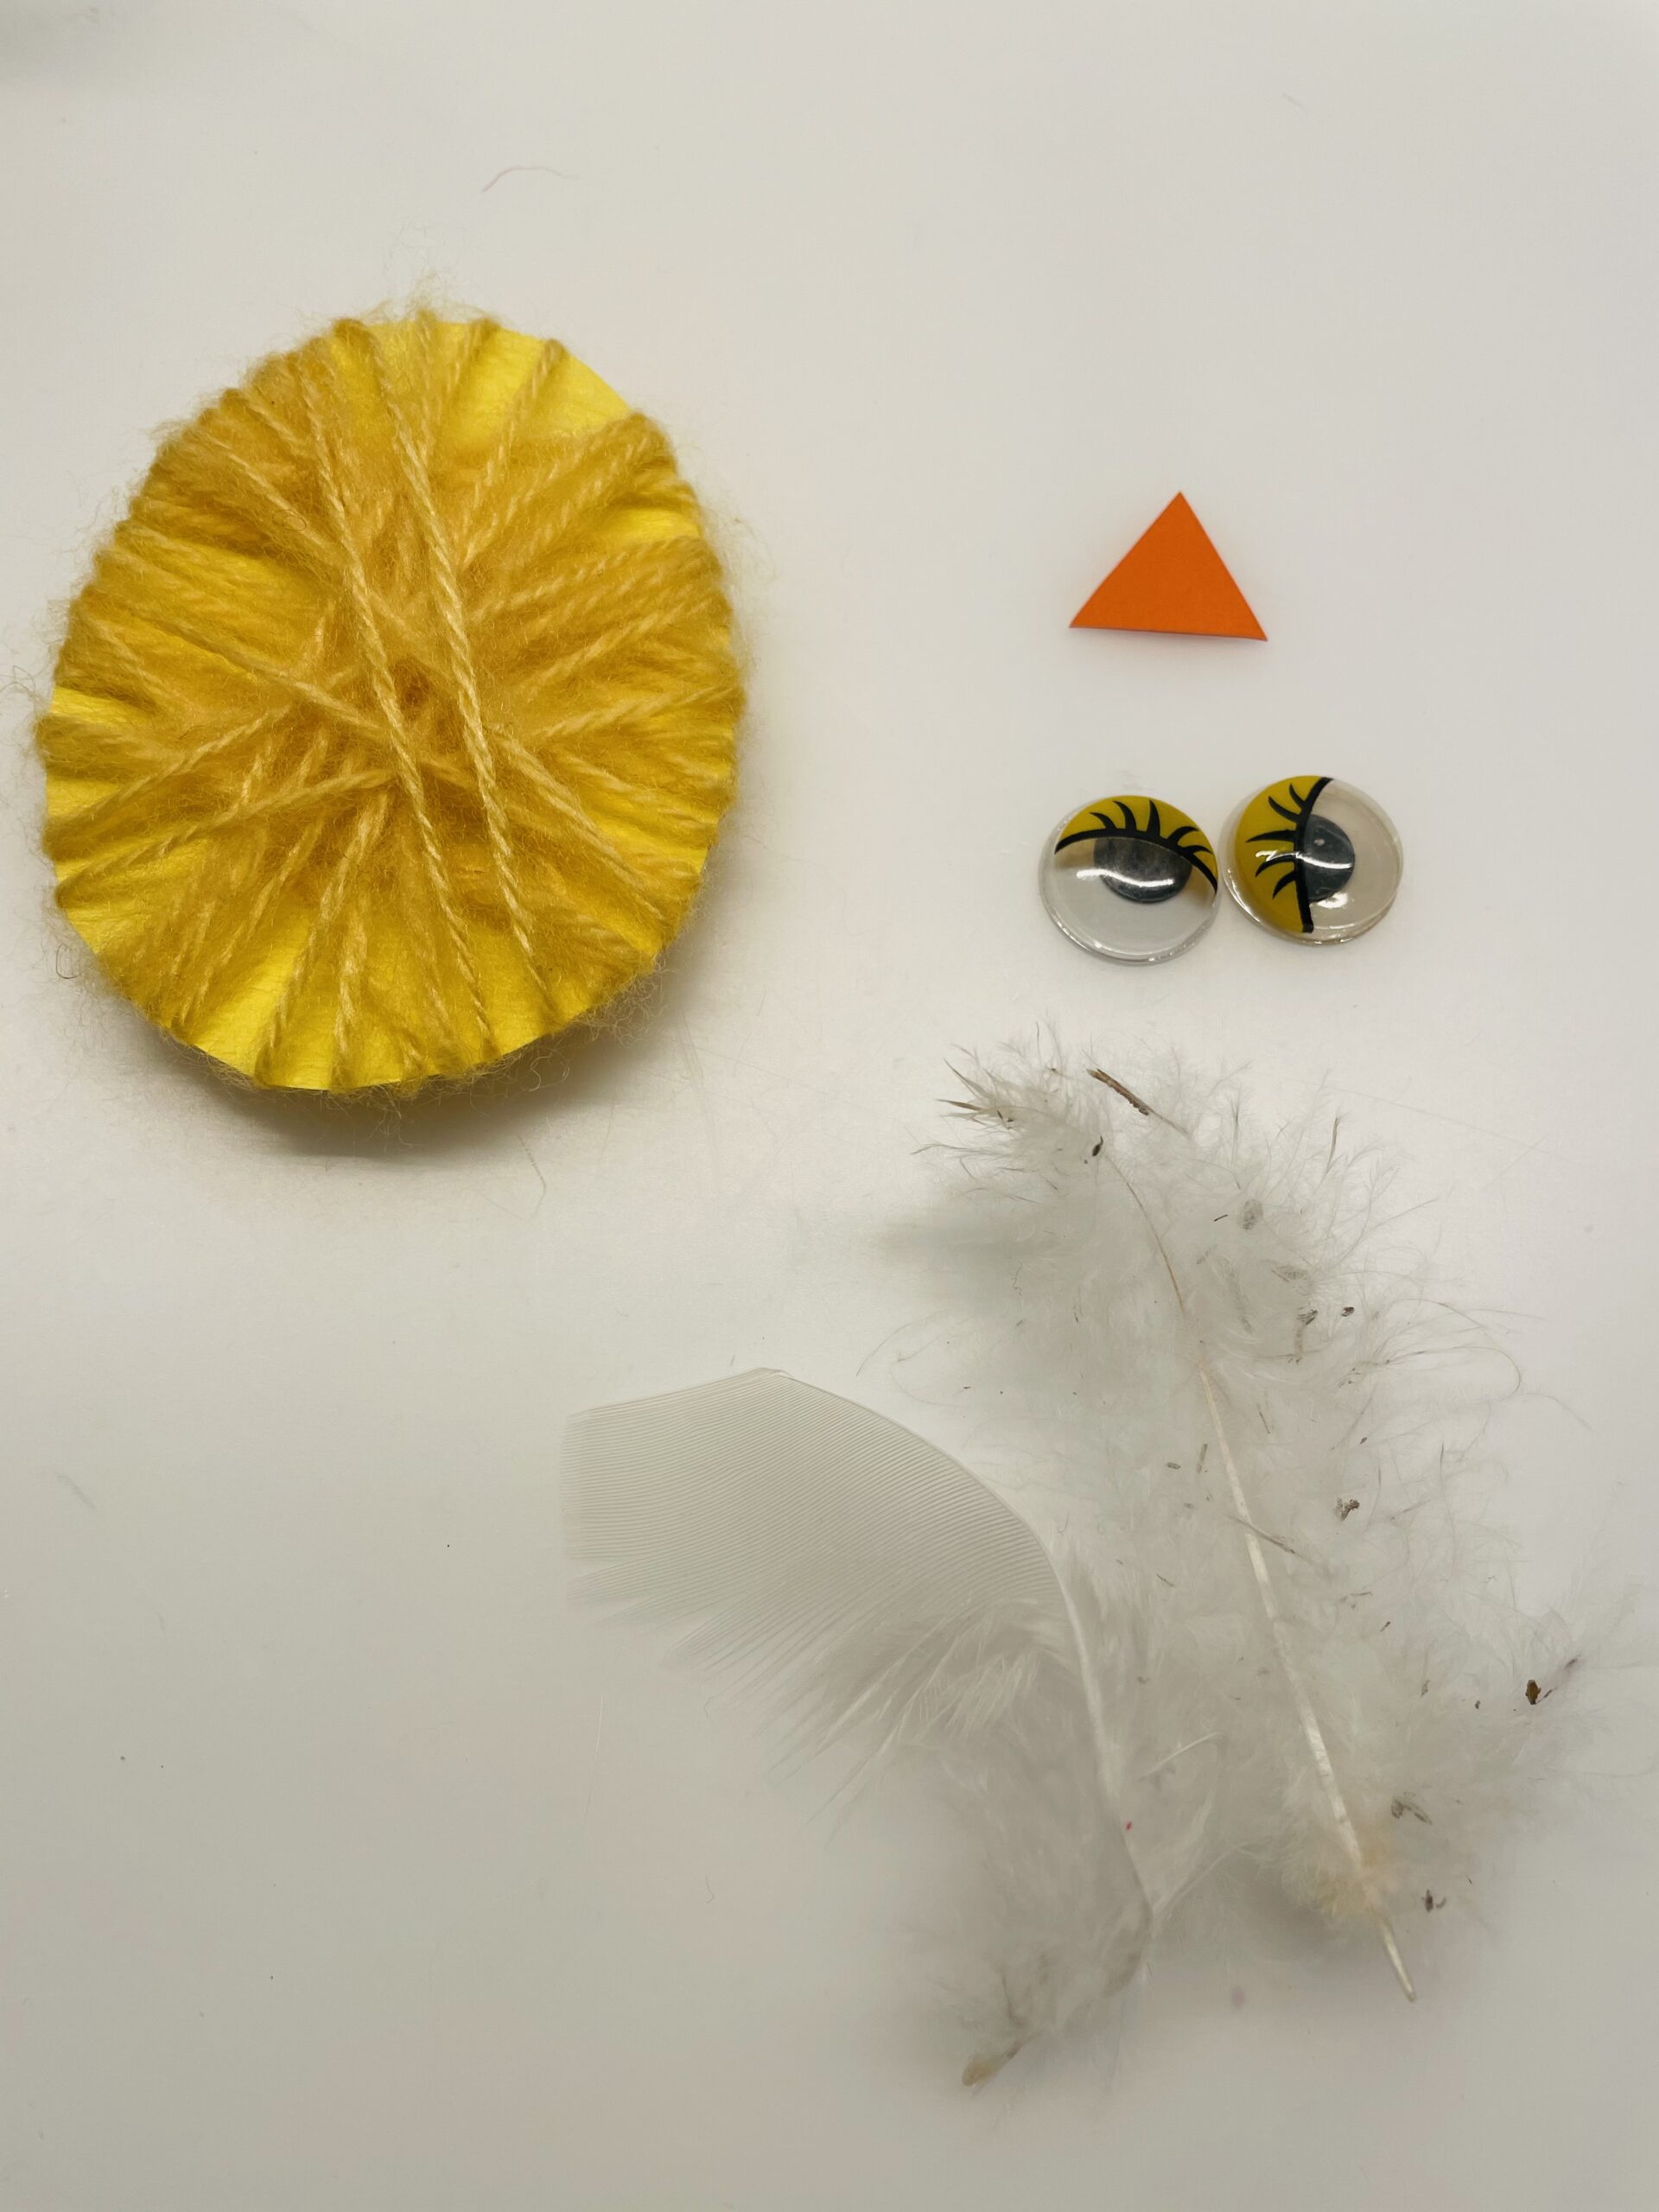 Bild zum Schritt 7 für das Bastel- und DIY-Abenteuer für Kinder: 'Legt eure Wackelaugen, ein kleines oranges Dreieck und zwei Federn...'